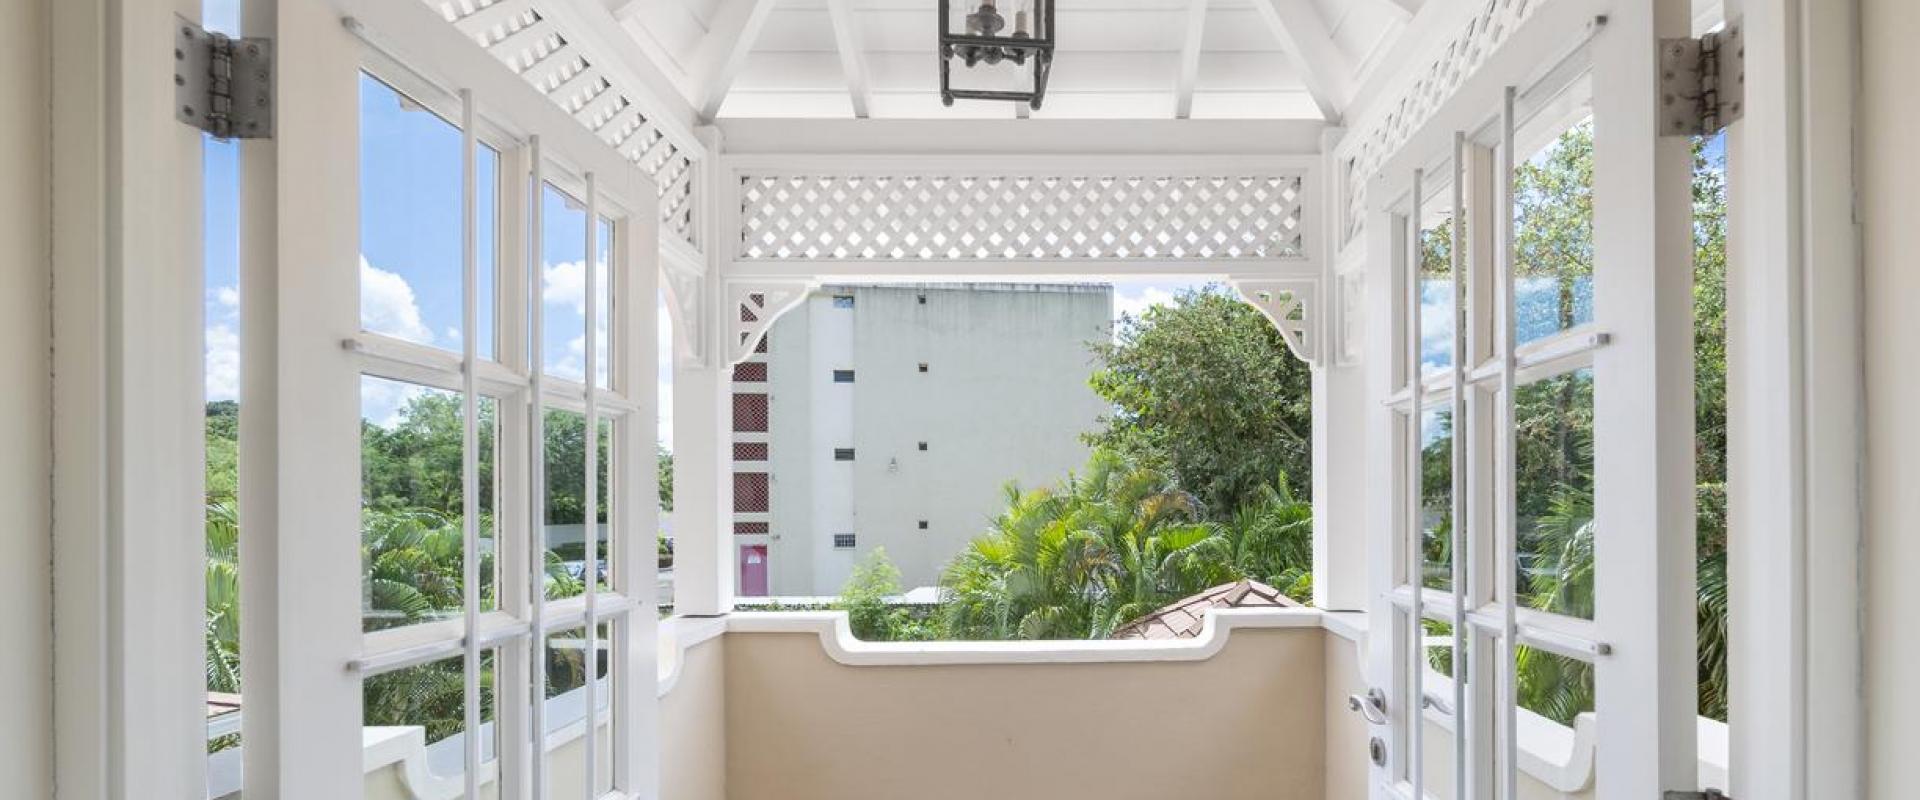 Tara Barbados 4 Bedroom Holiday Rental Villa Primary Bedroom Balcony